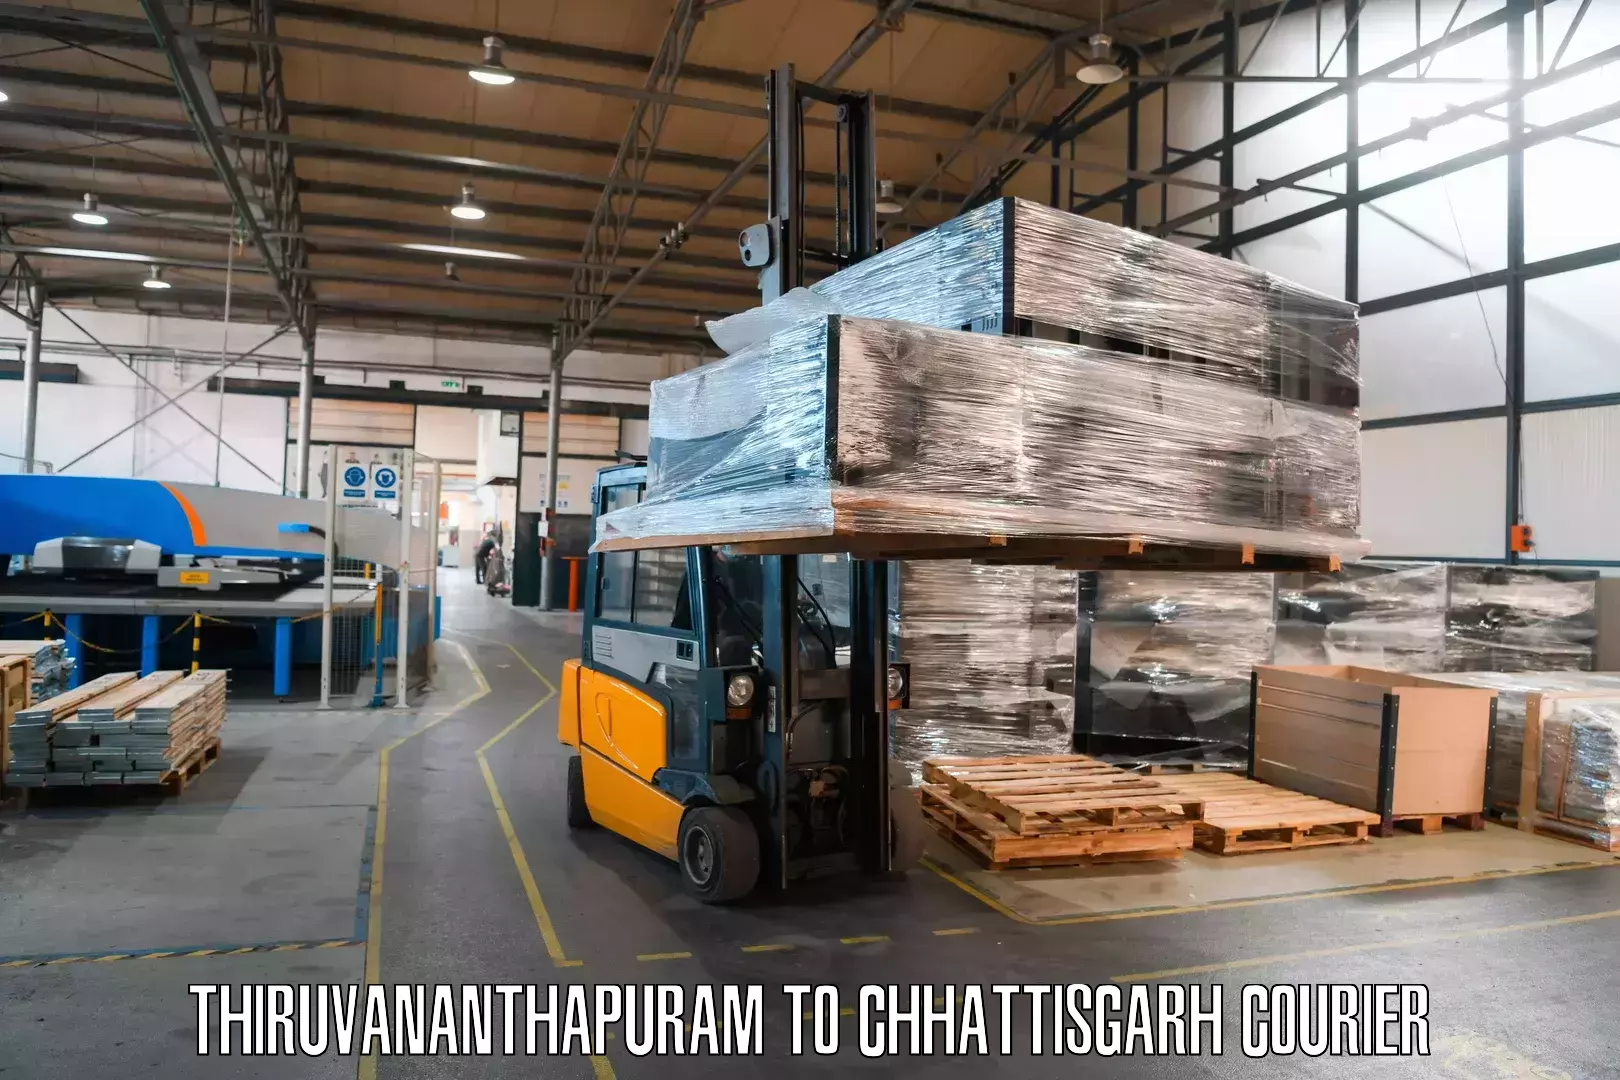 Courier service comparison Thiruvananthapuram to Premnagar